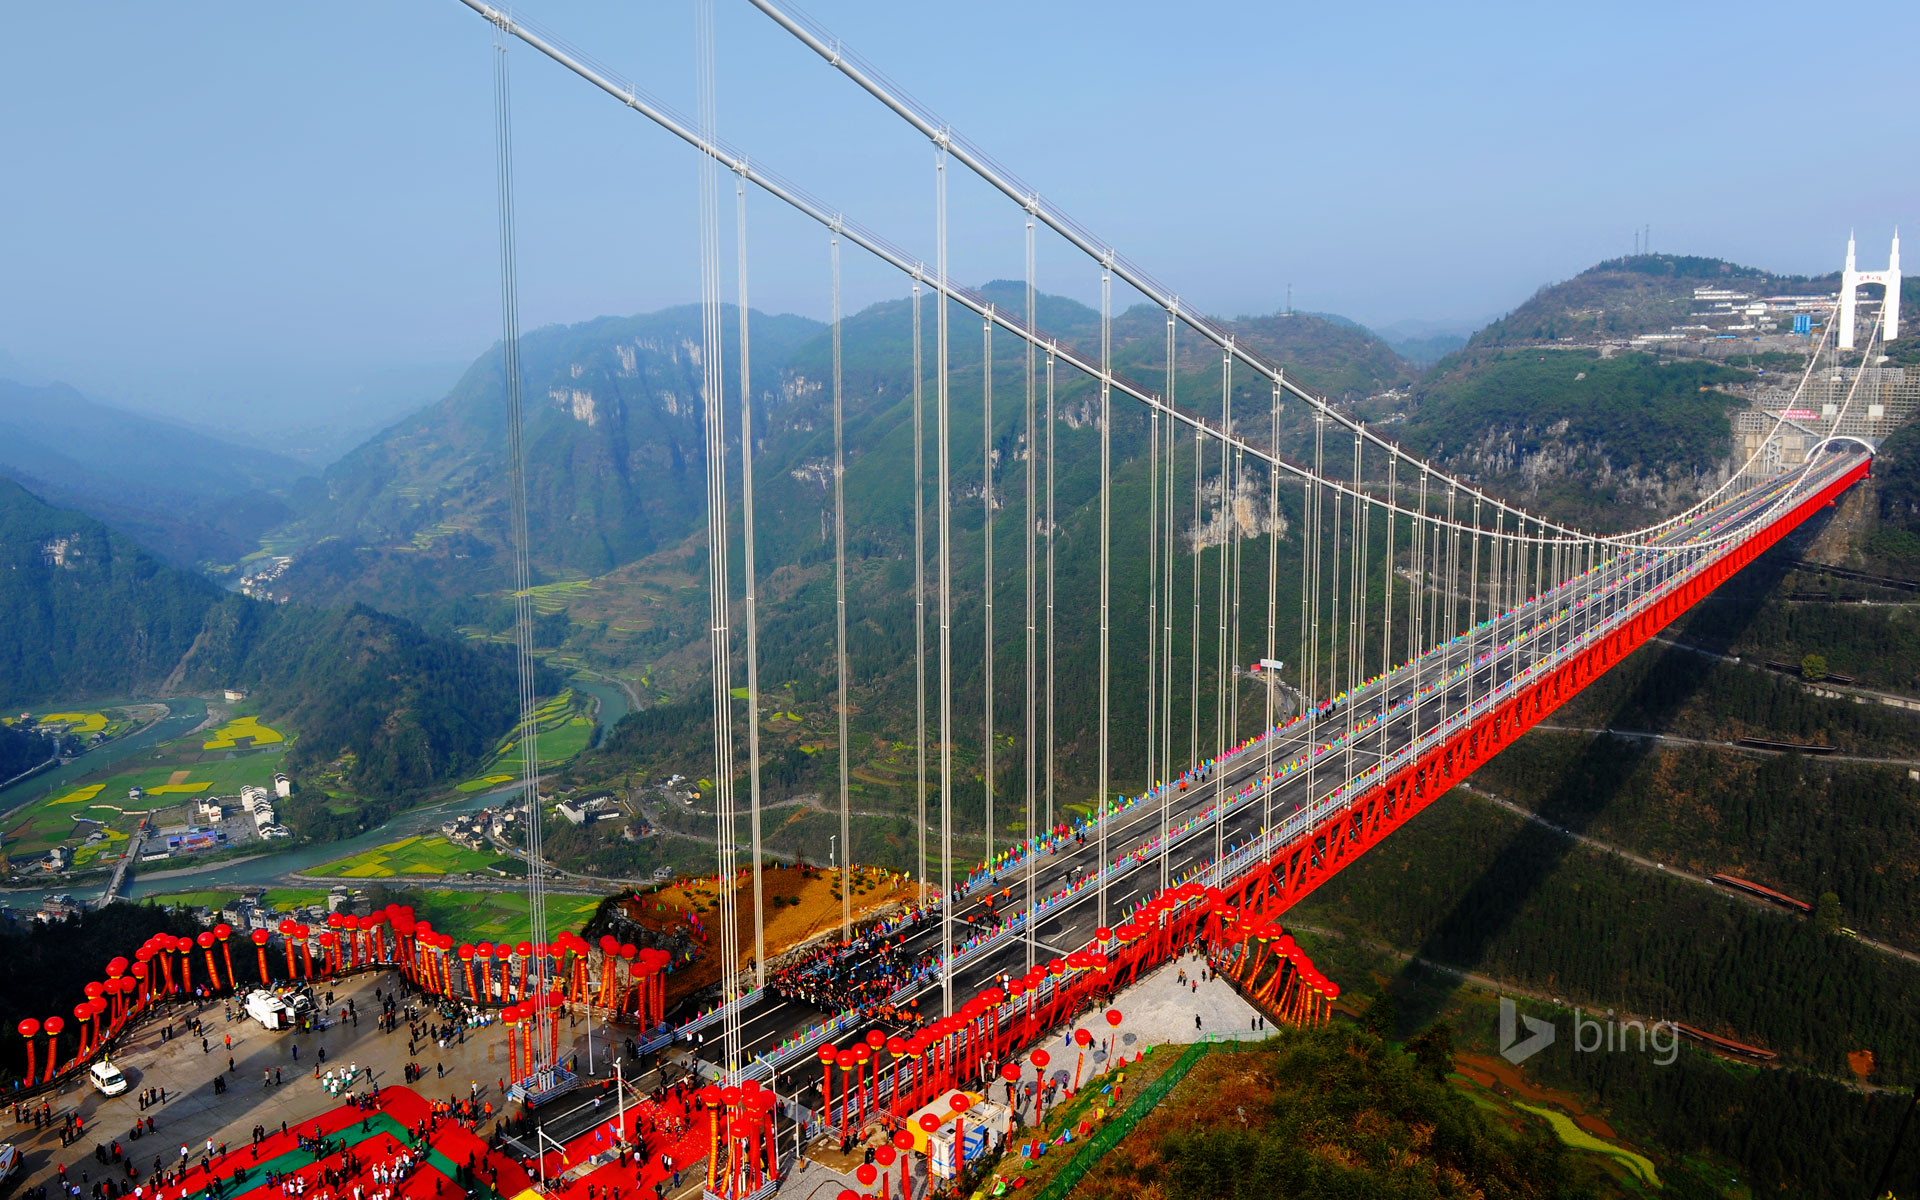 Chia sẻ với hơn 117 hình nền cây cầu hay nhất  thdonghoadian